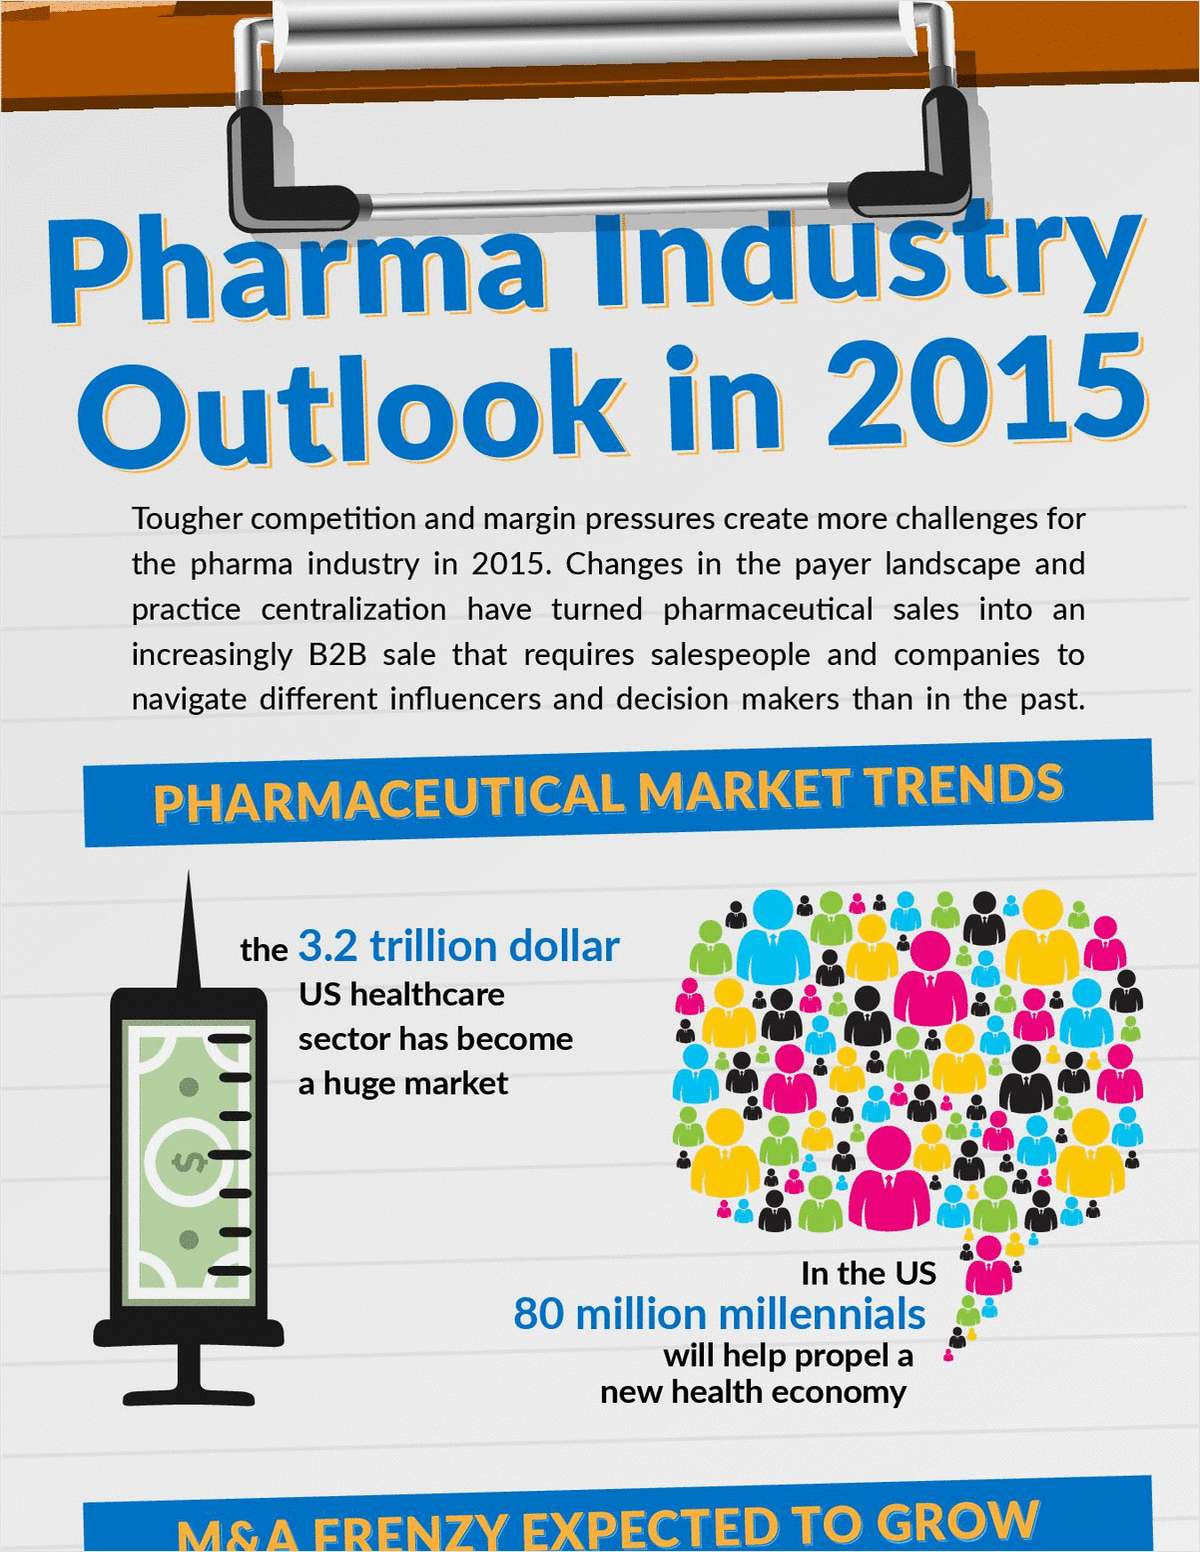 Pharma Industry Outlook in 2015